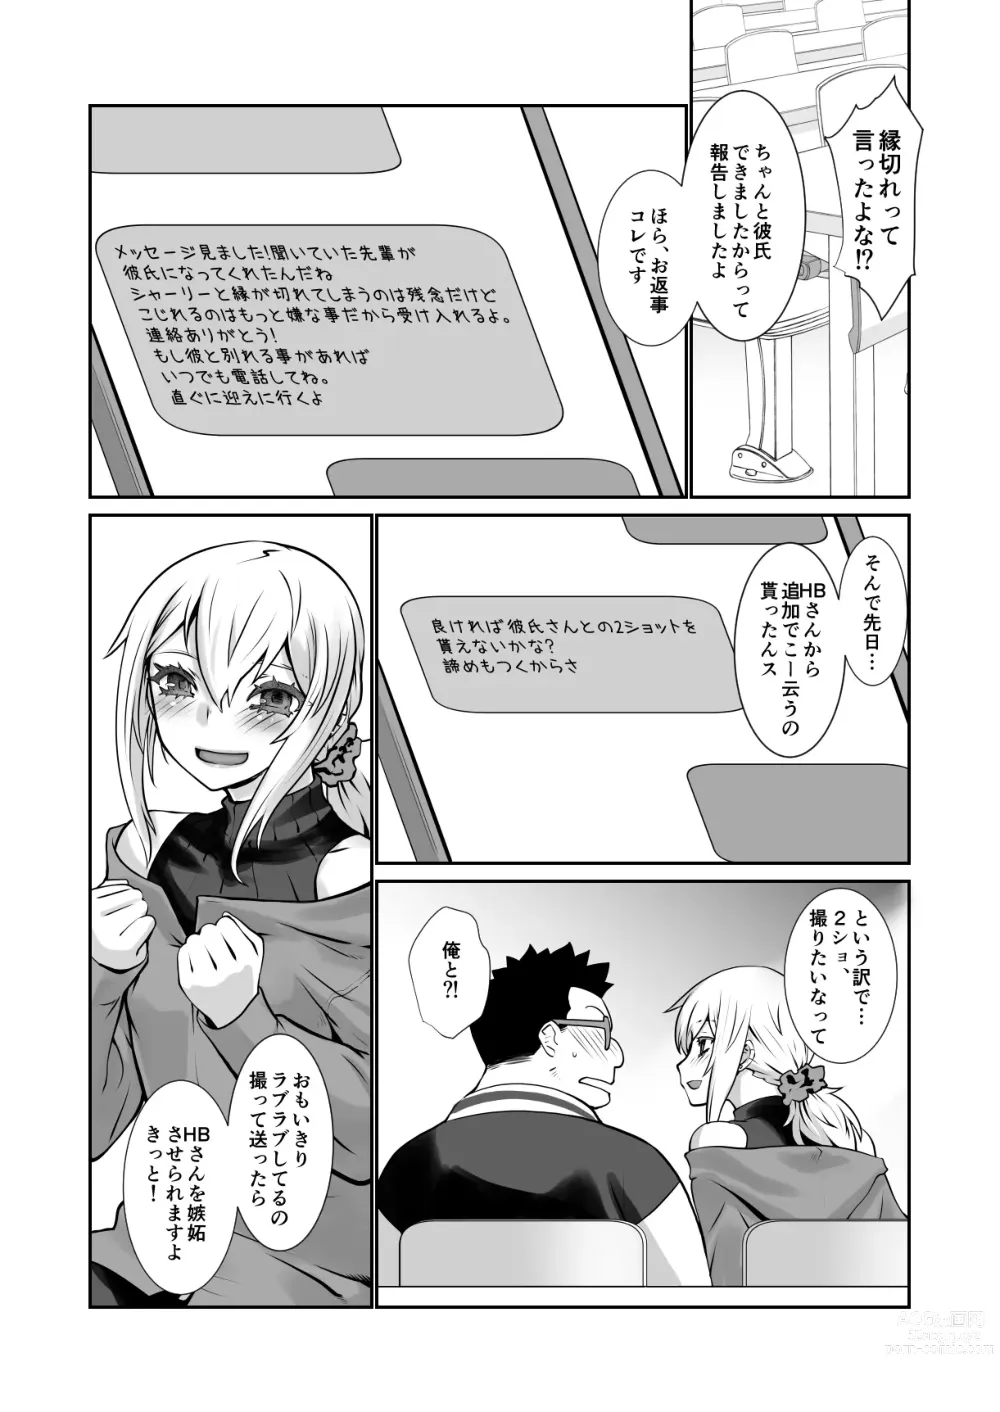 Page 13 of doujinshi Chara Katta Kouhai ga Konnani Otome ni Narimashita.